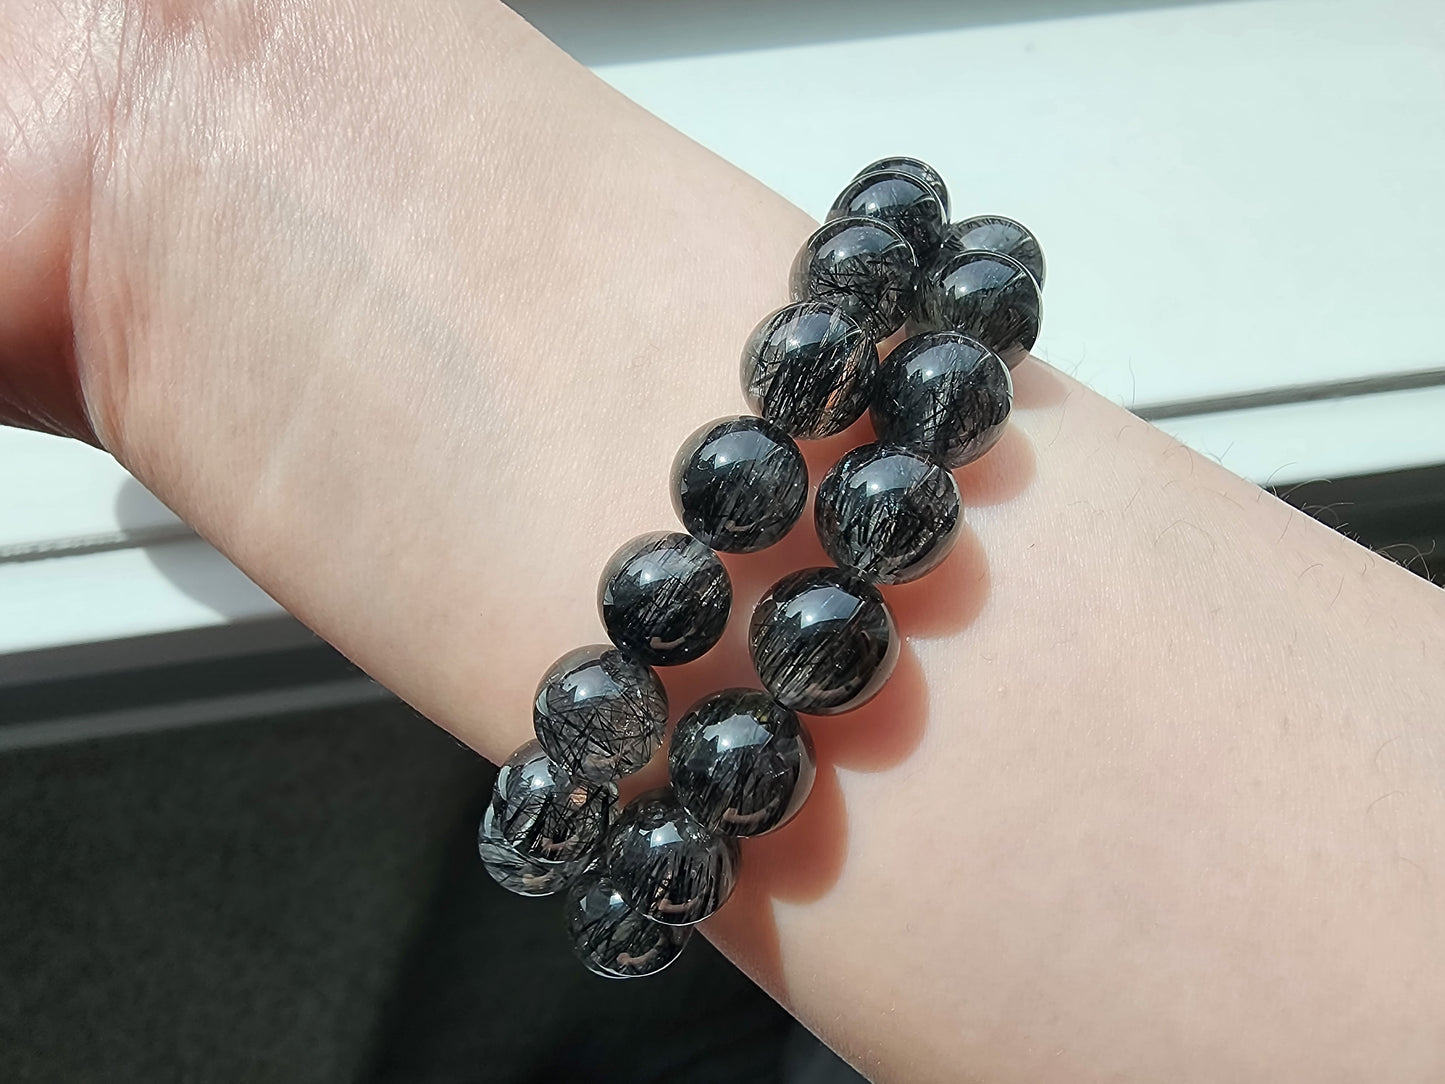 [Bracelet] Black Rutilated Quartz Crystal Bracelet - Protection, Grounding, Luck